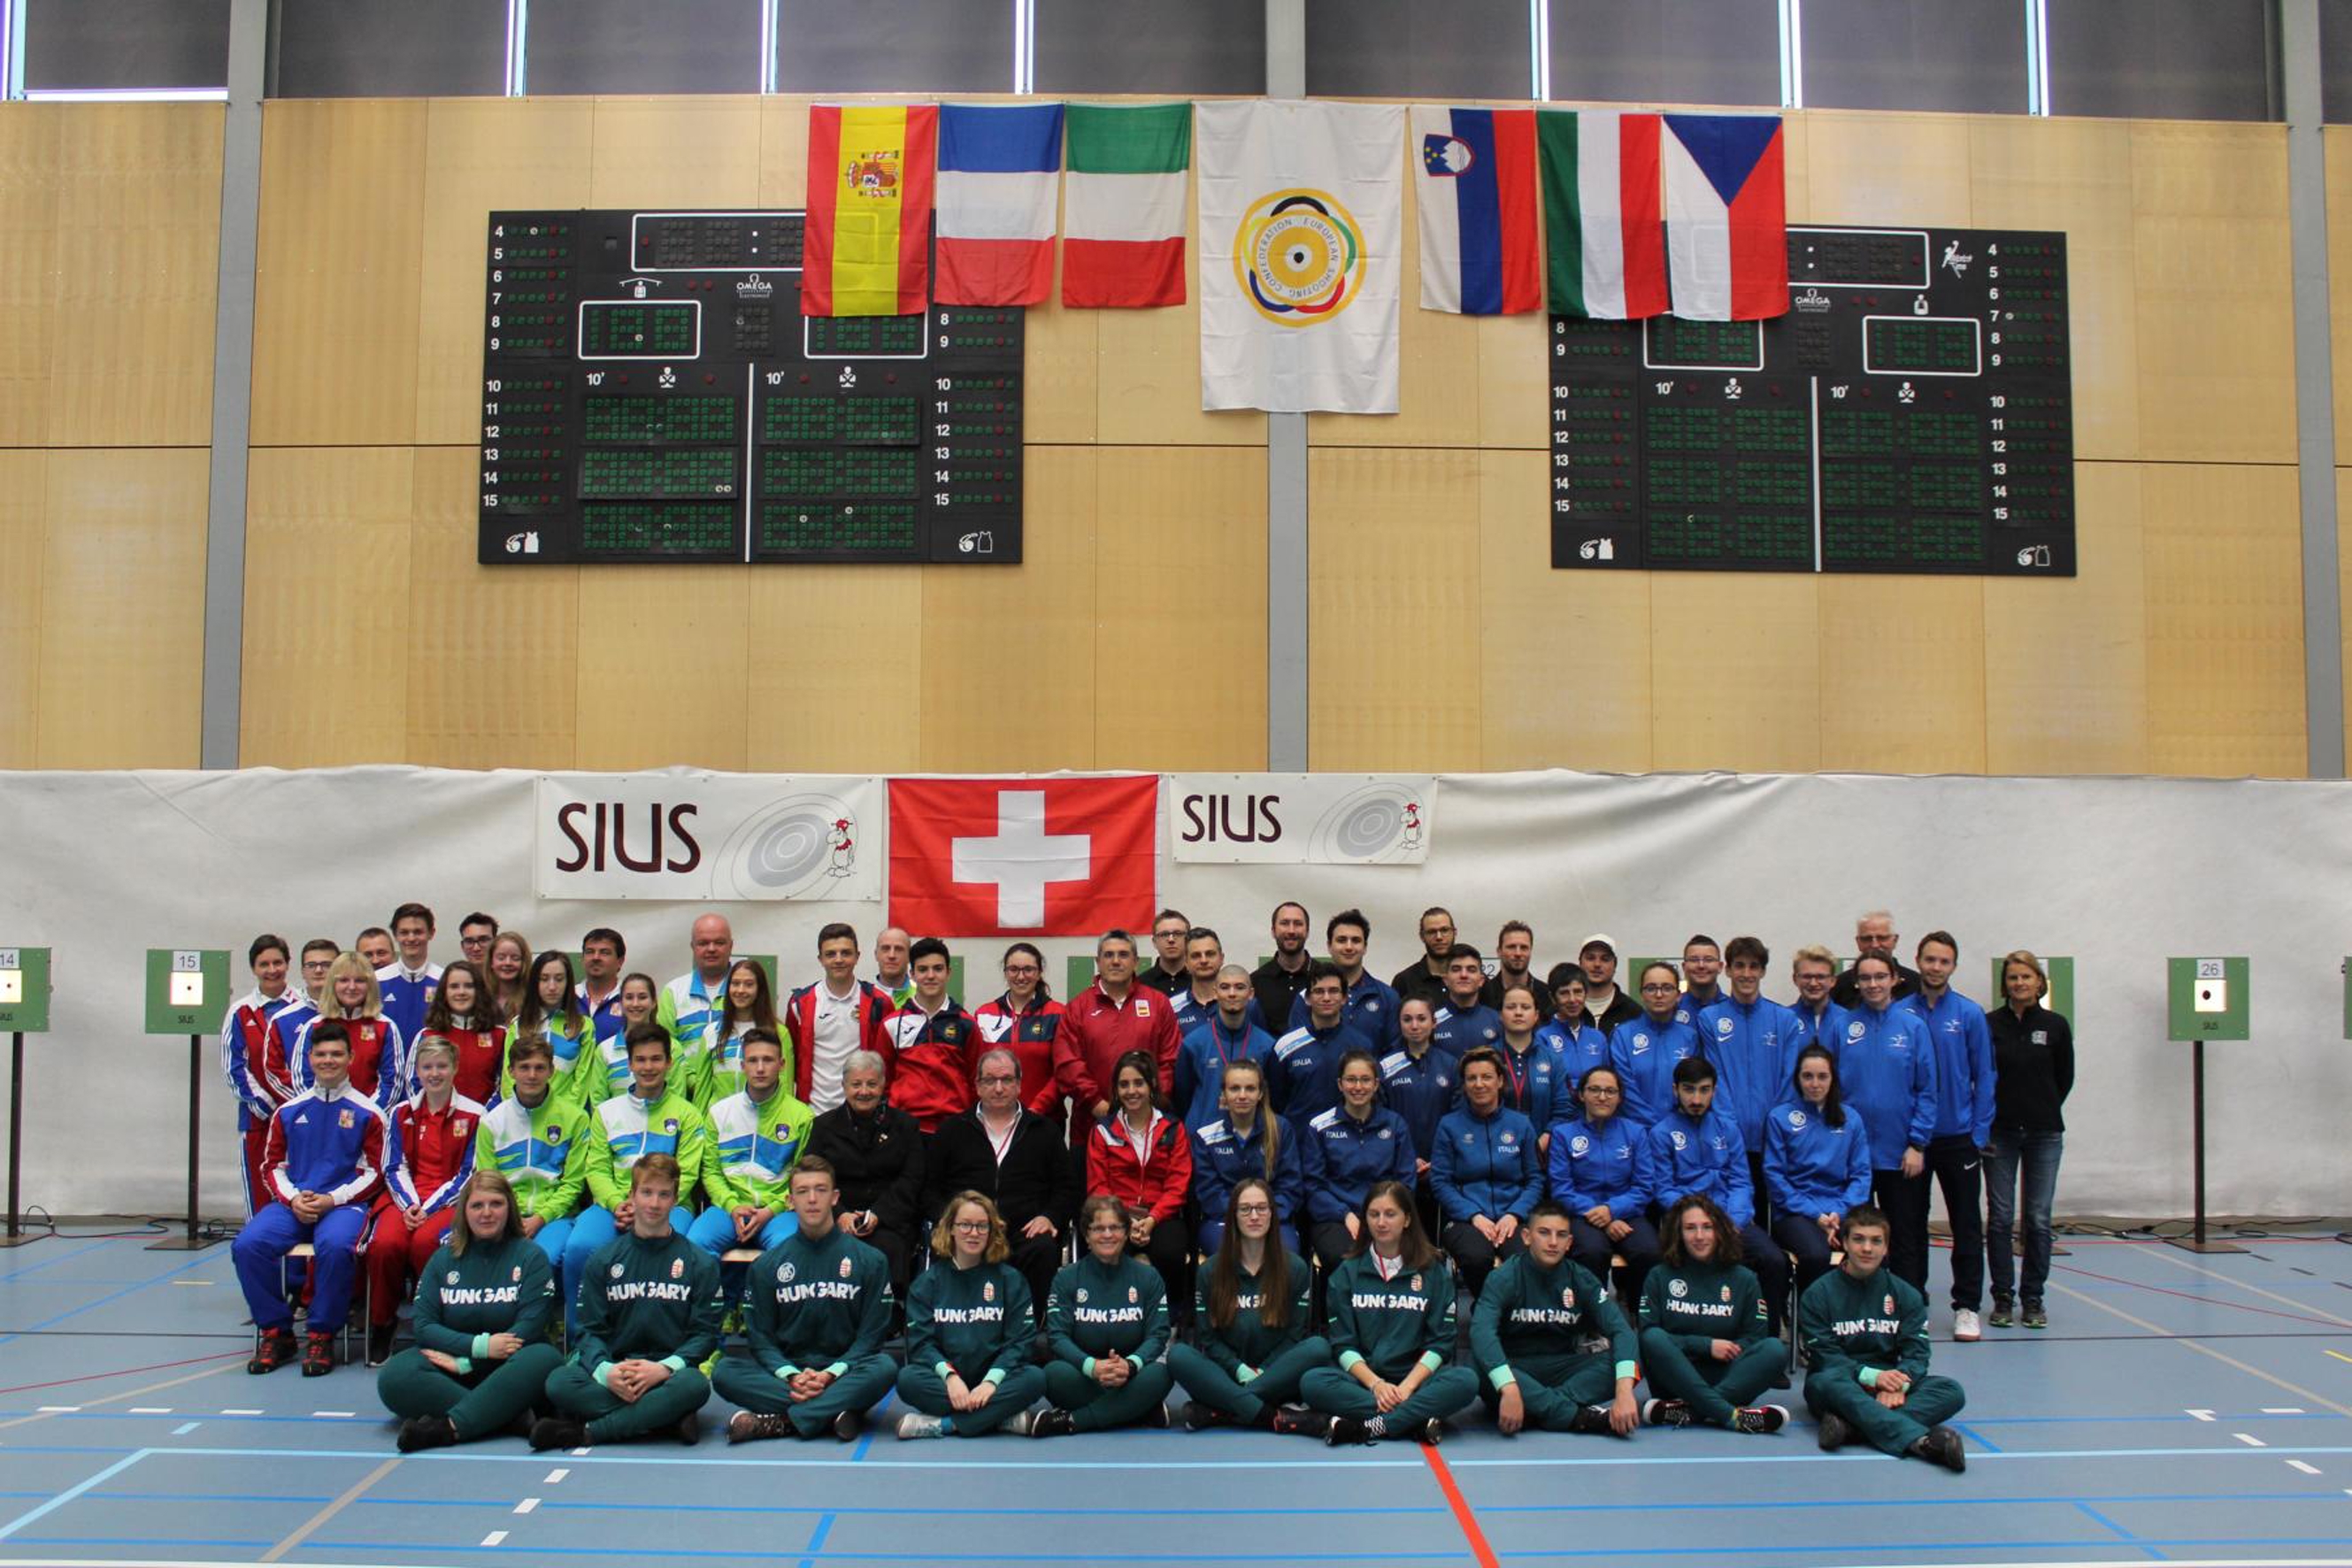 Sechs Nationen treten an der Regional Round West der European Youth League Championship an. Leider fehlt die Schweiz.